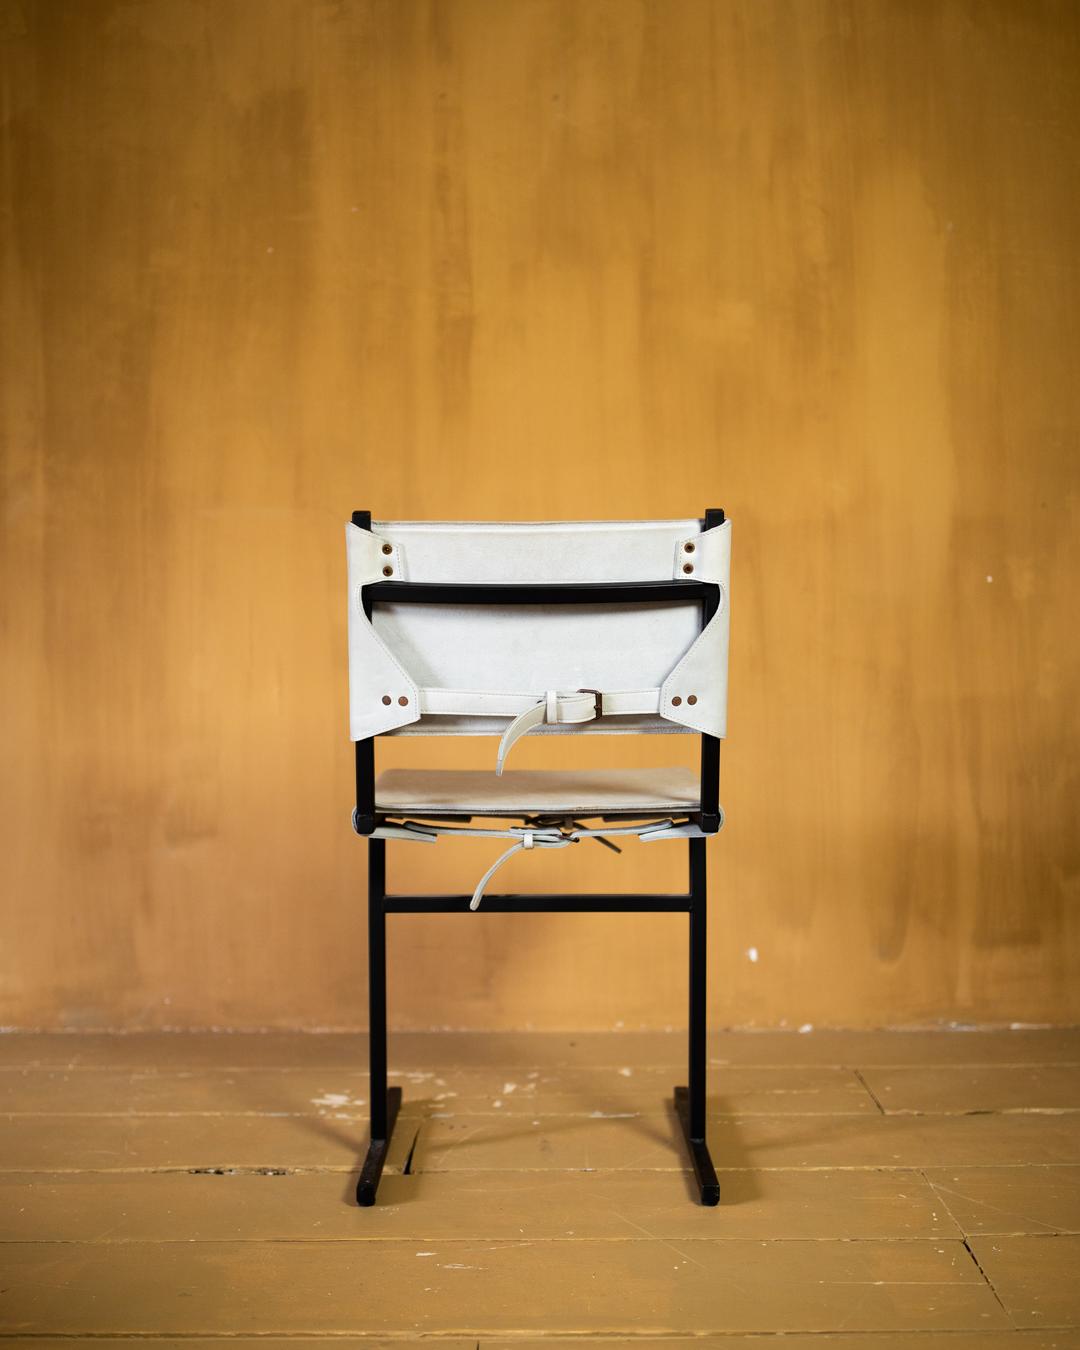 Memento chair